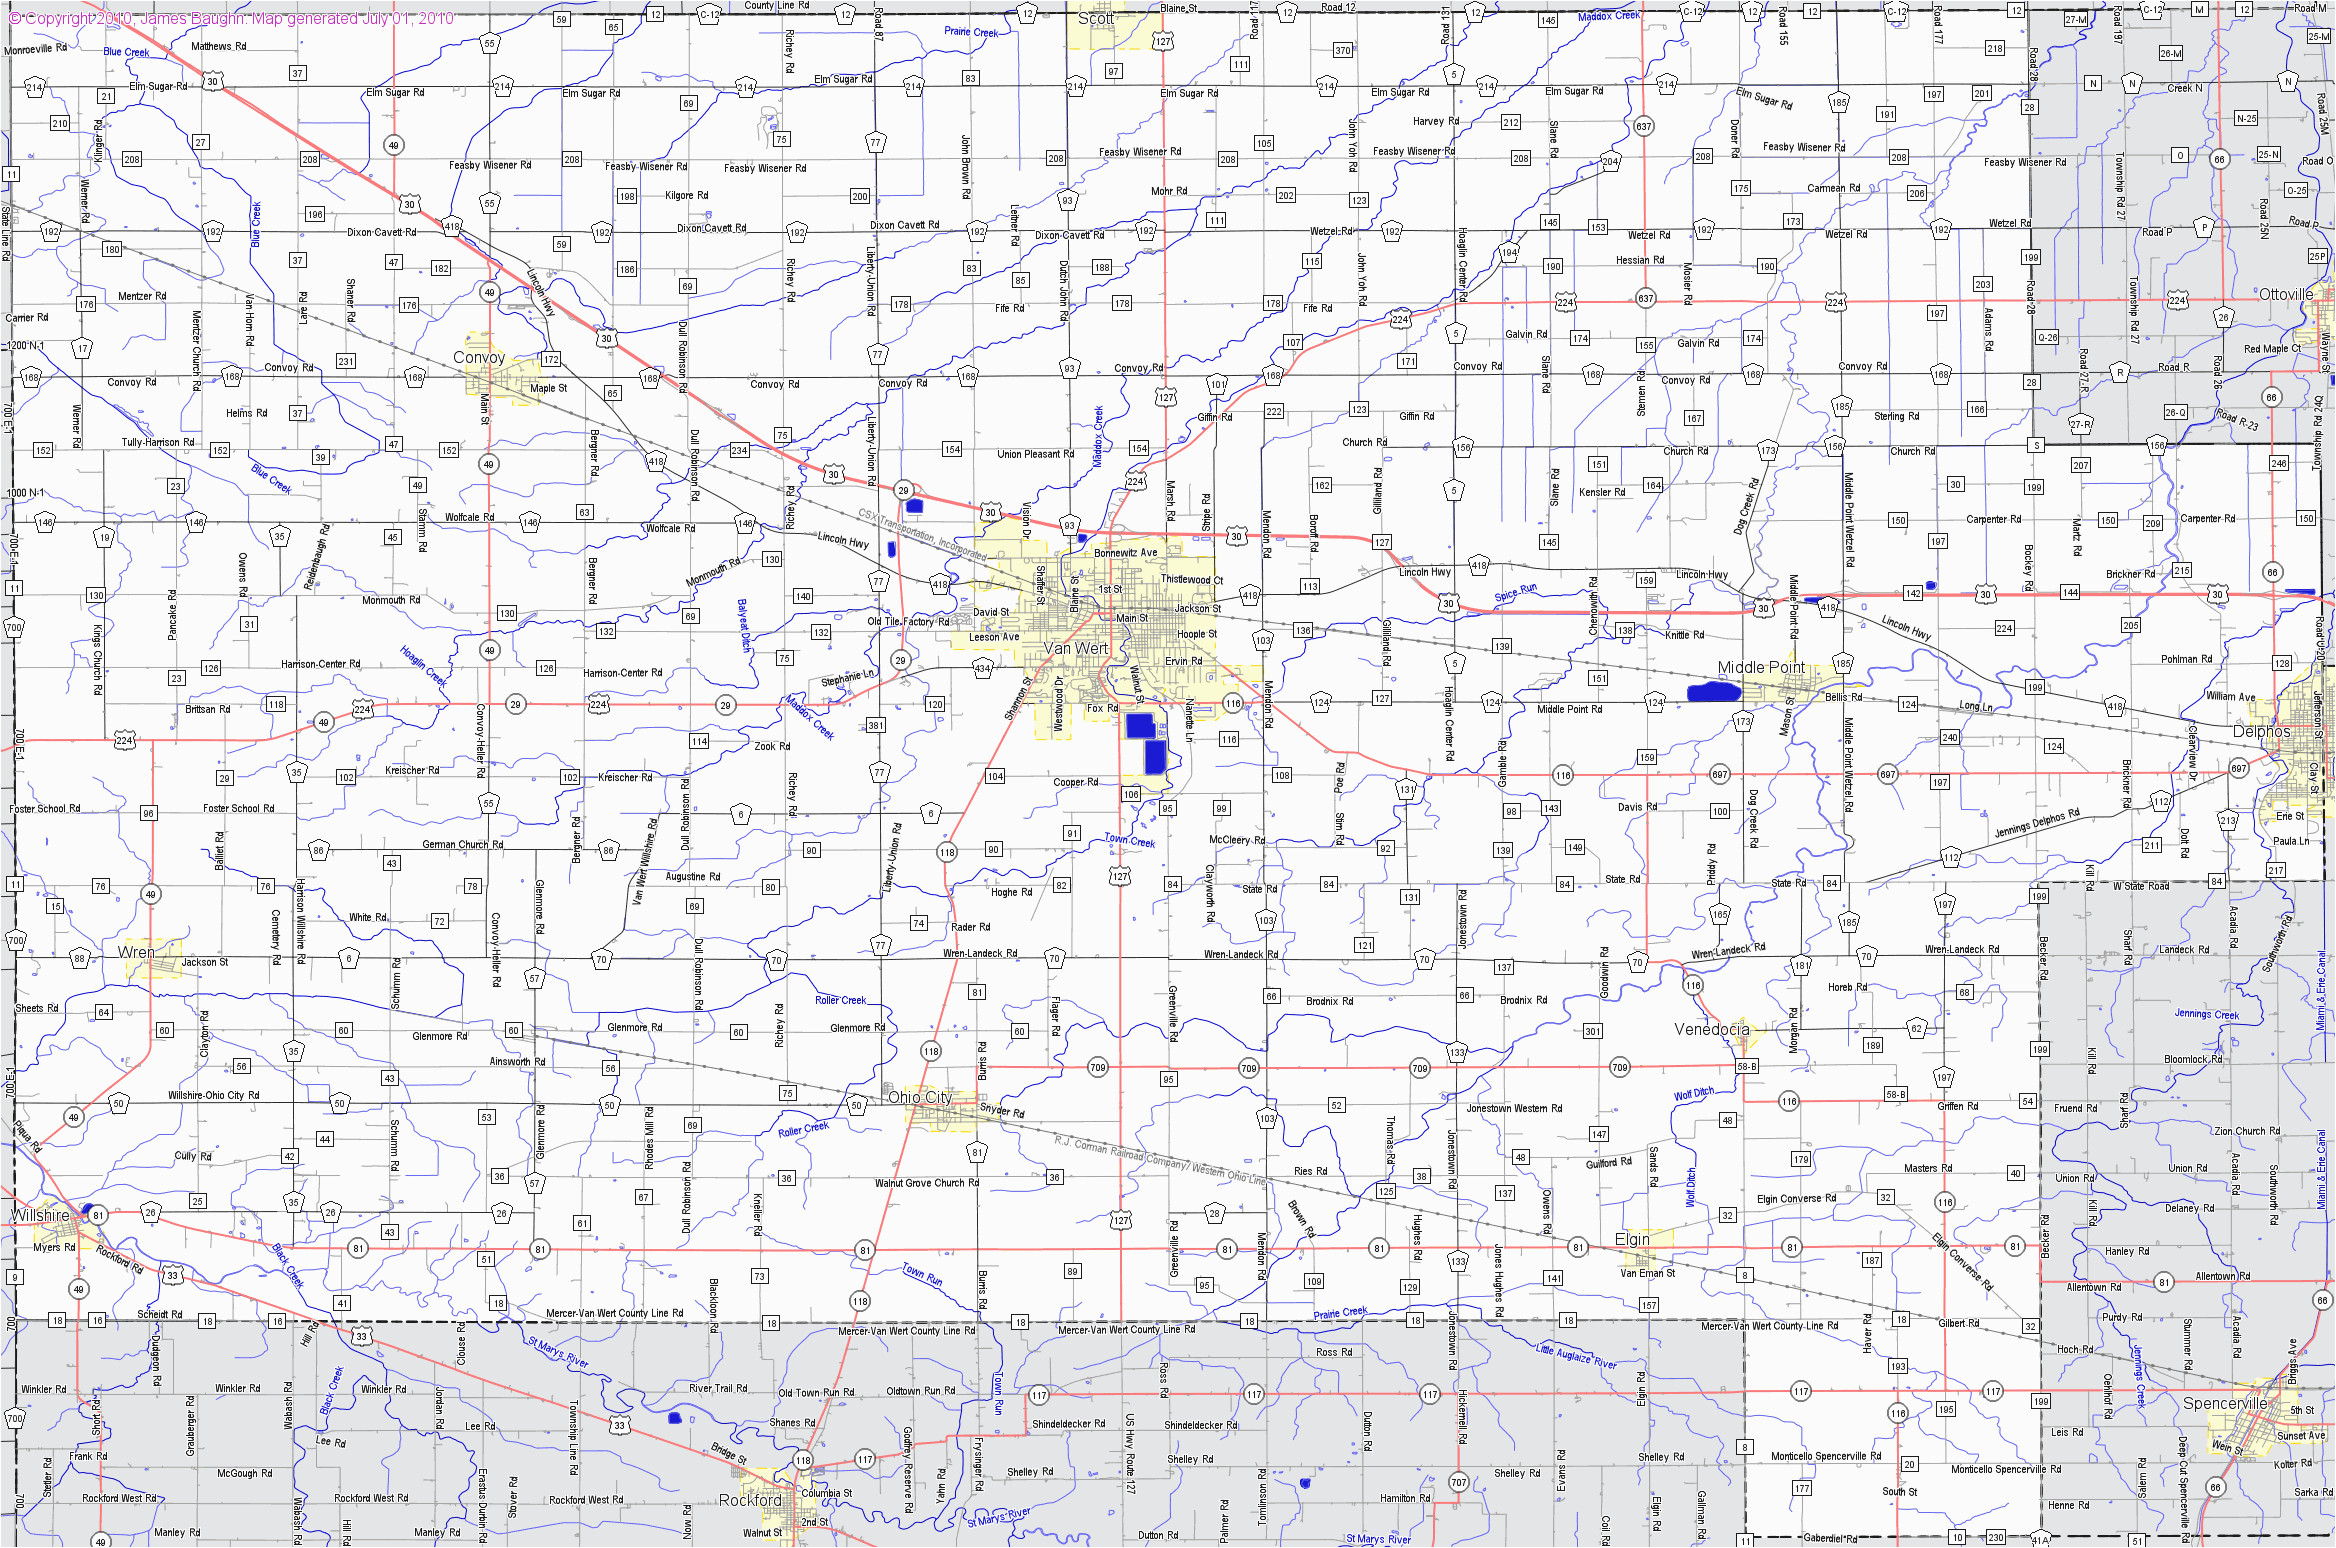 map of van wert county ohio unique sanborn maps 1800 to 1899 ohio